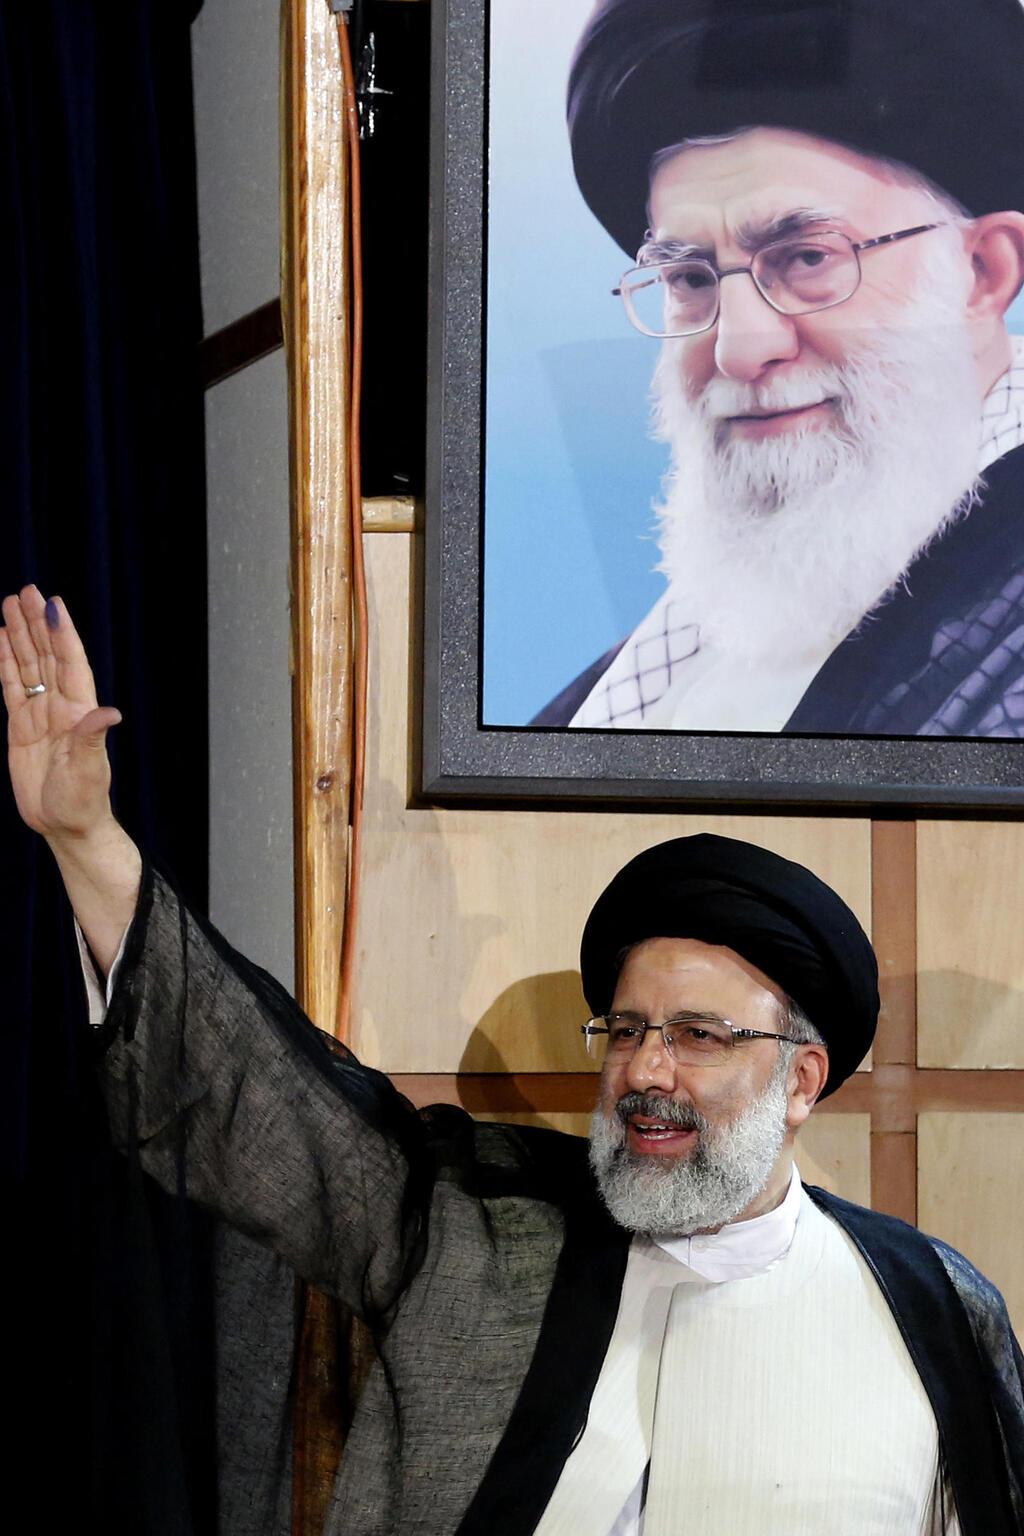 נשיא איראן שנהרג ב התרסקות איבראהים ראיסי לצד תמונת המנהיג העליון חמינאי בשדנת 2017 - כשראיסי התמודד אז (ונכשל) בבחירות לנשיאות